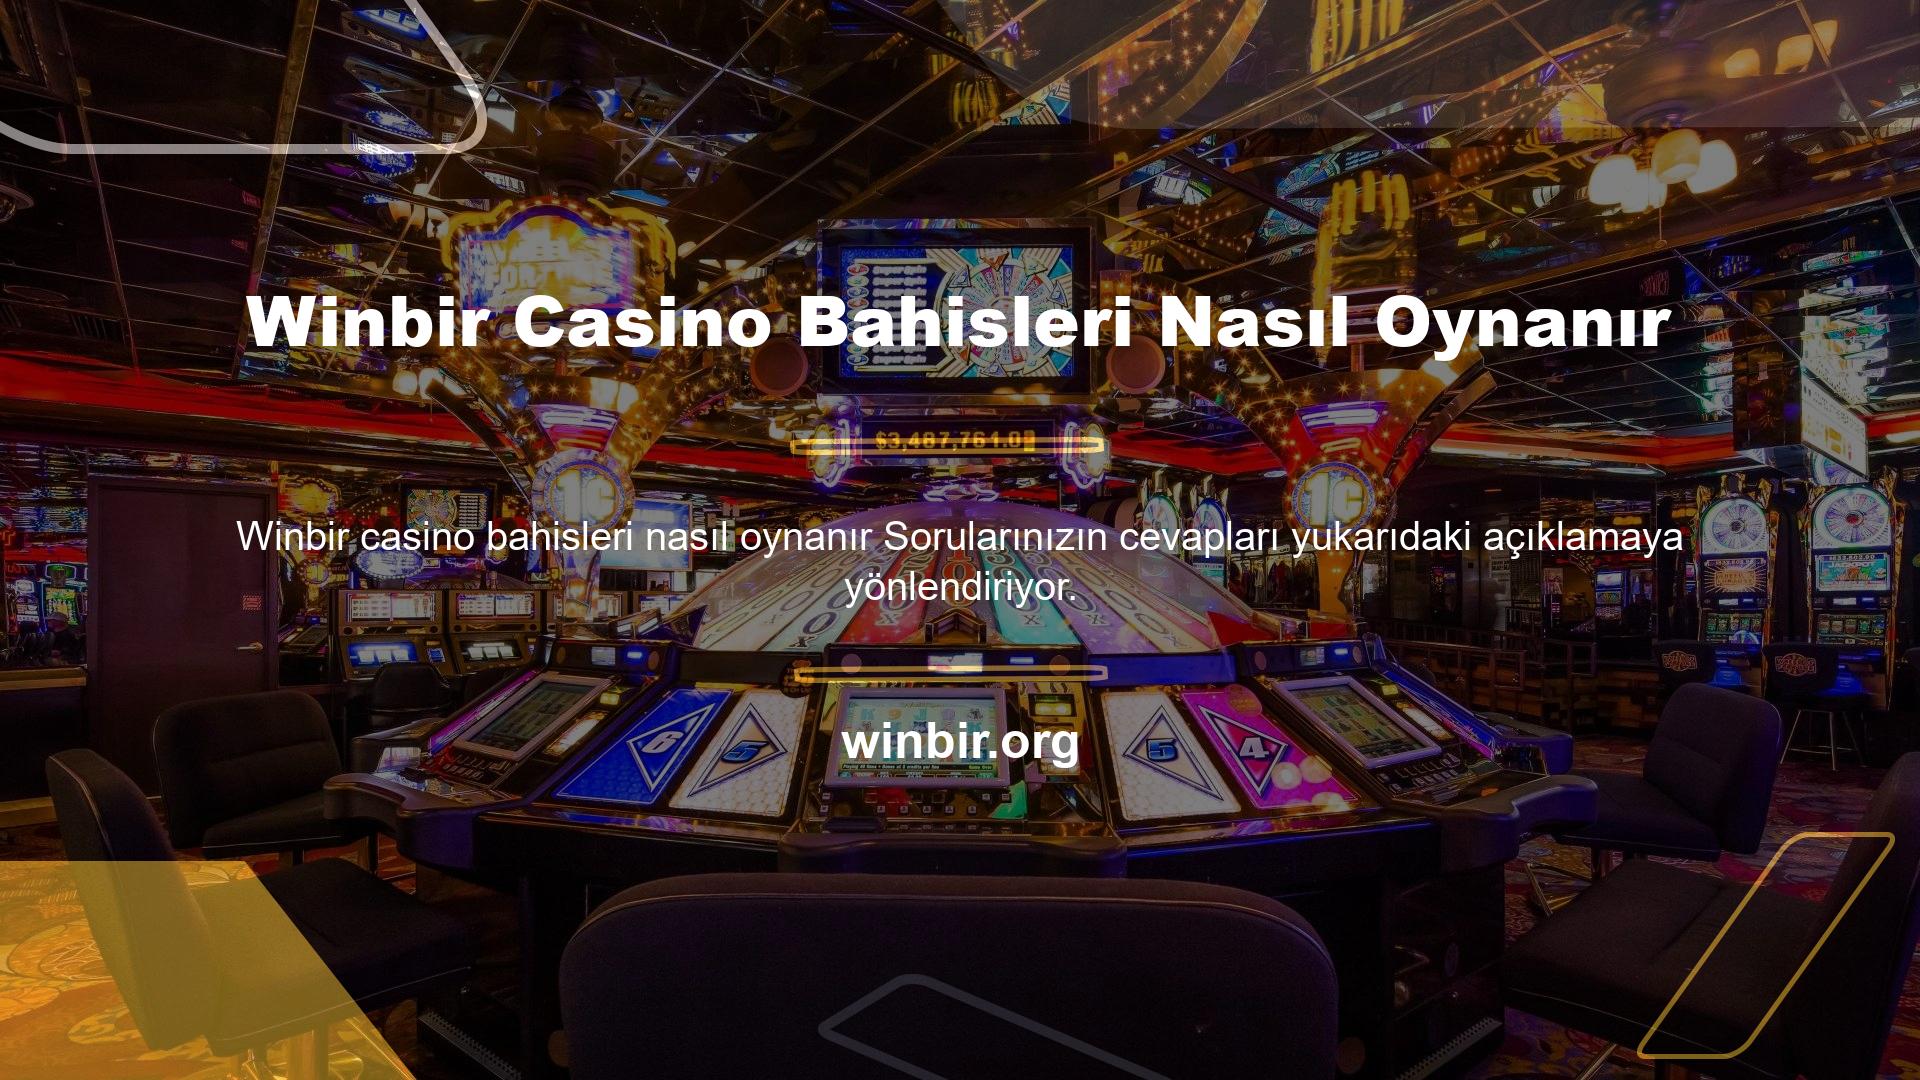 Winbir casino bahisleri nasıl oynanır